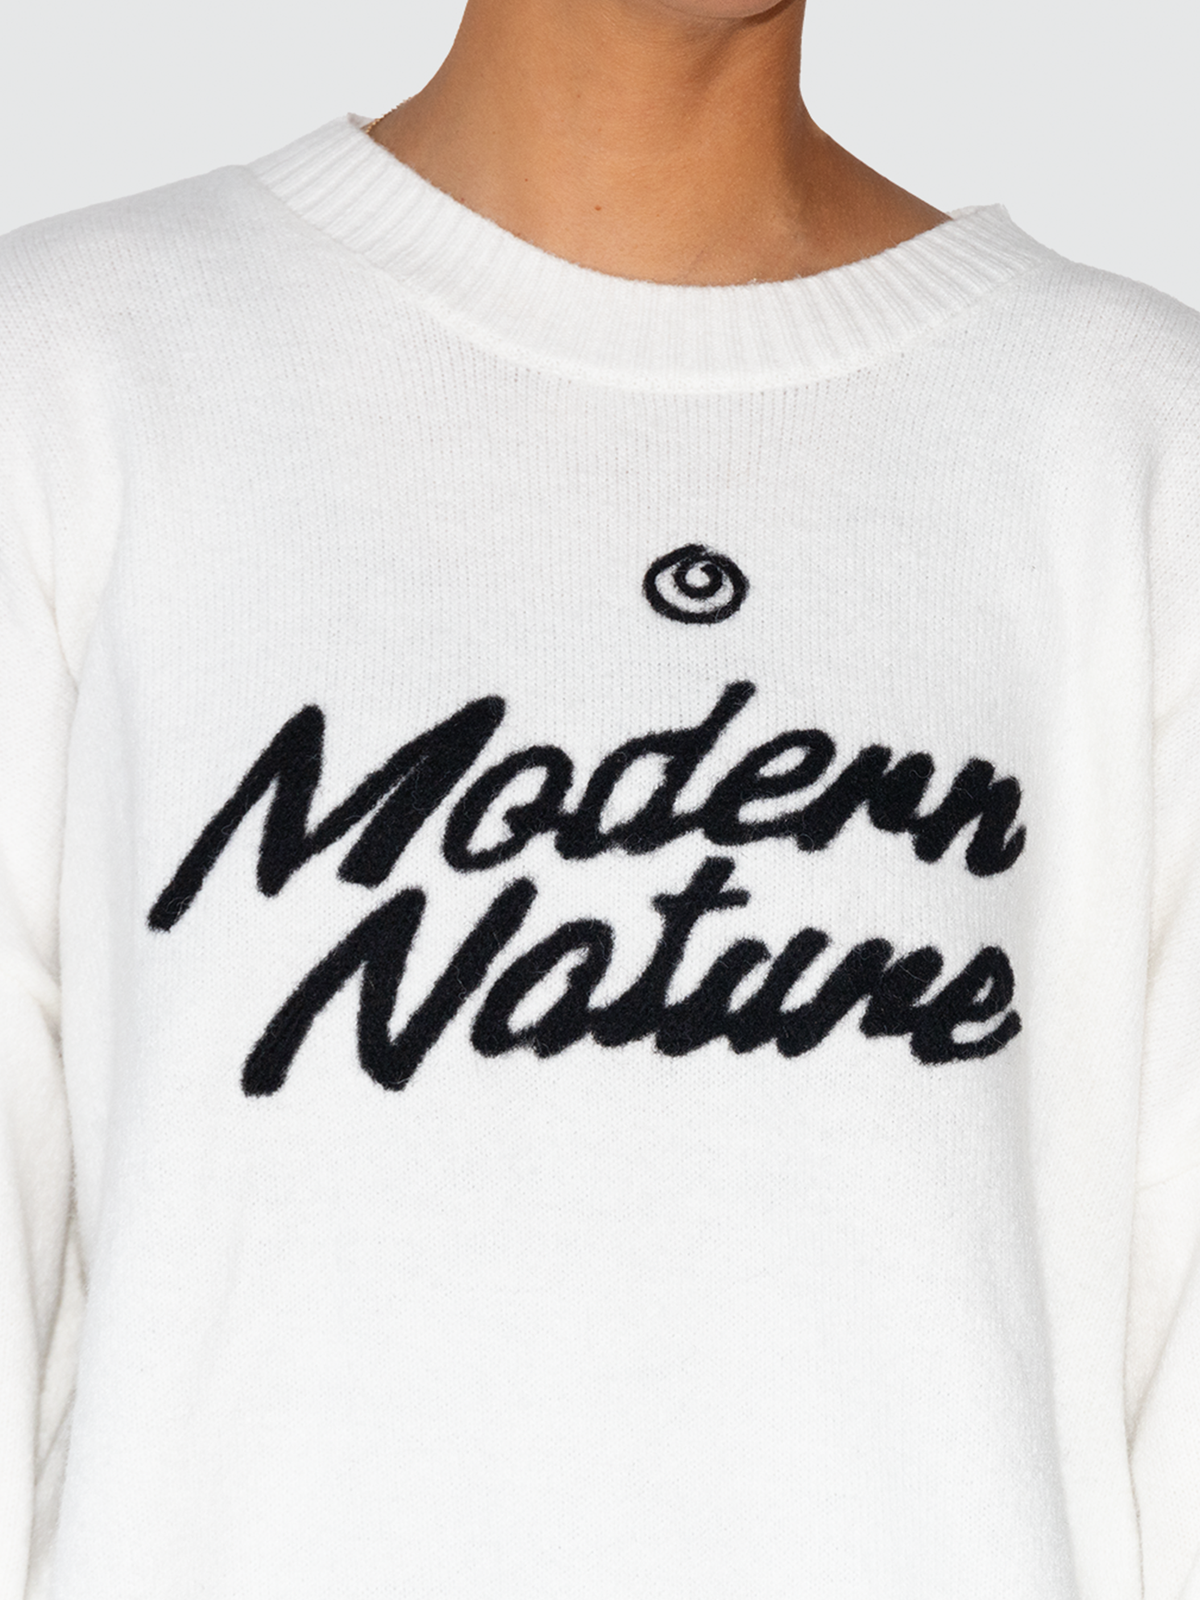 Modern Nature Knit Sweater